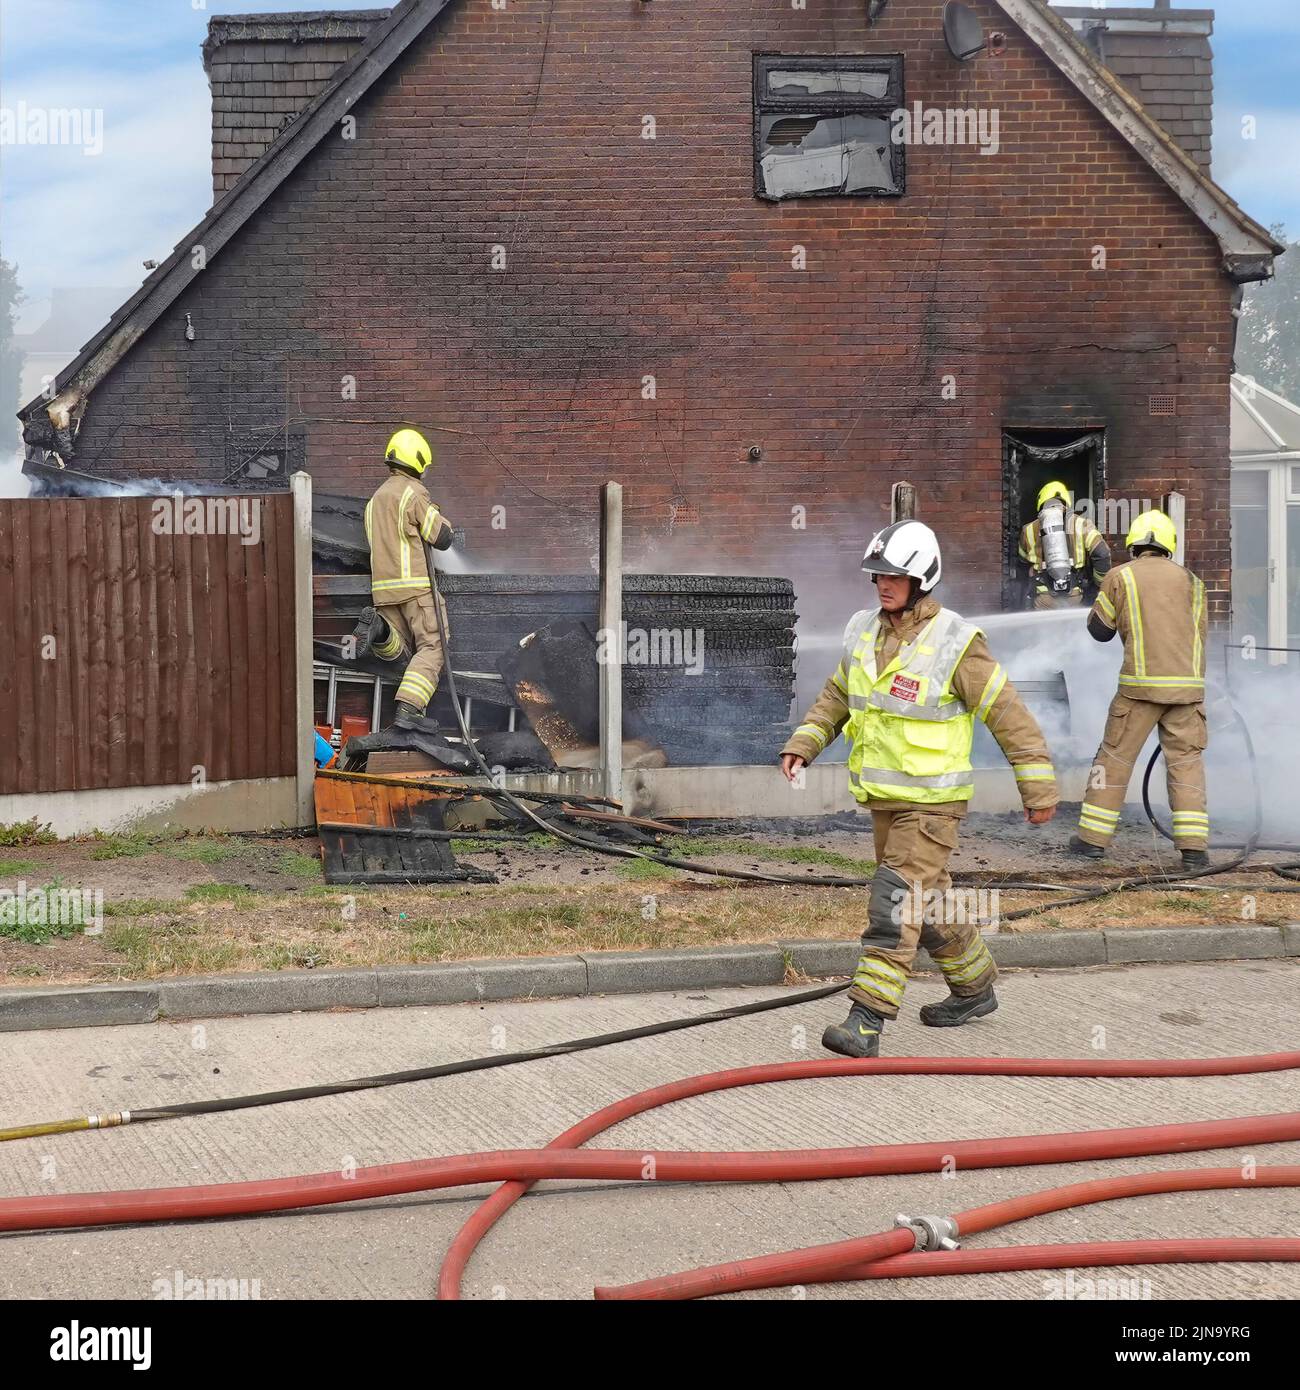 Essex Feuerwehr- und Rettungsdienst Feuerwehrmann in Schutzkleidung gefährliche & gefährliche Arbeit Innensuche Dämpfung nach Hausbrand England Großbritannien Stockfoto